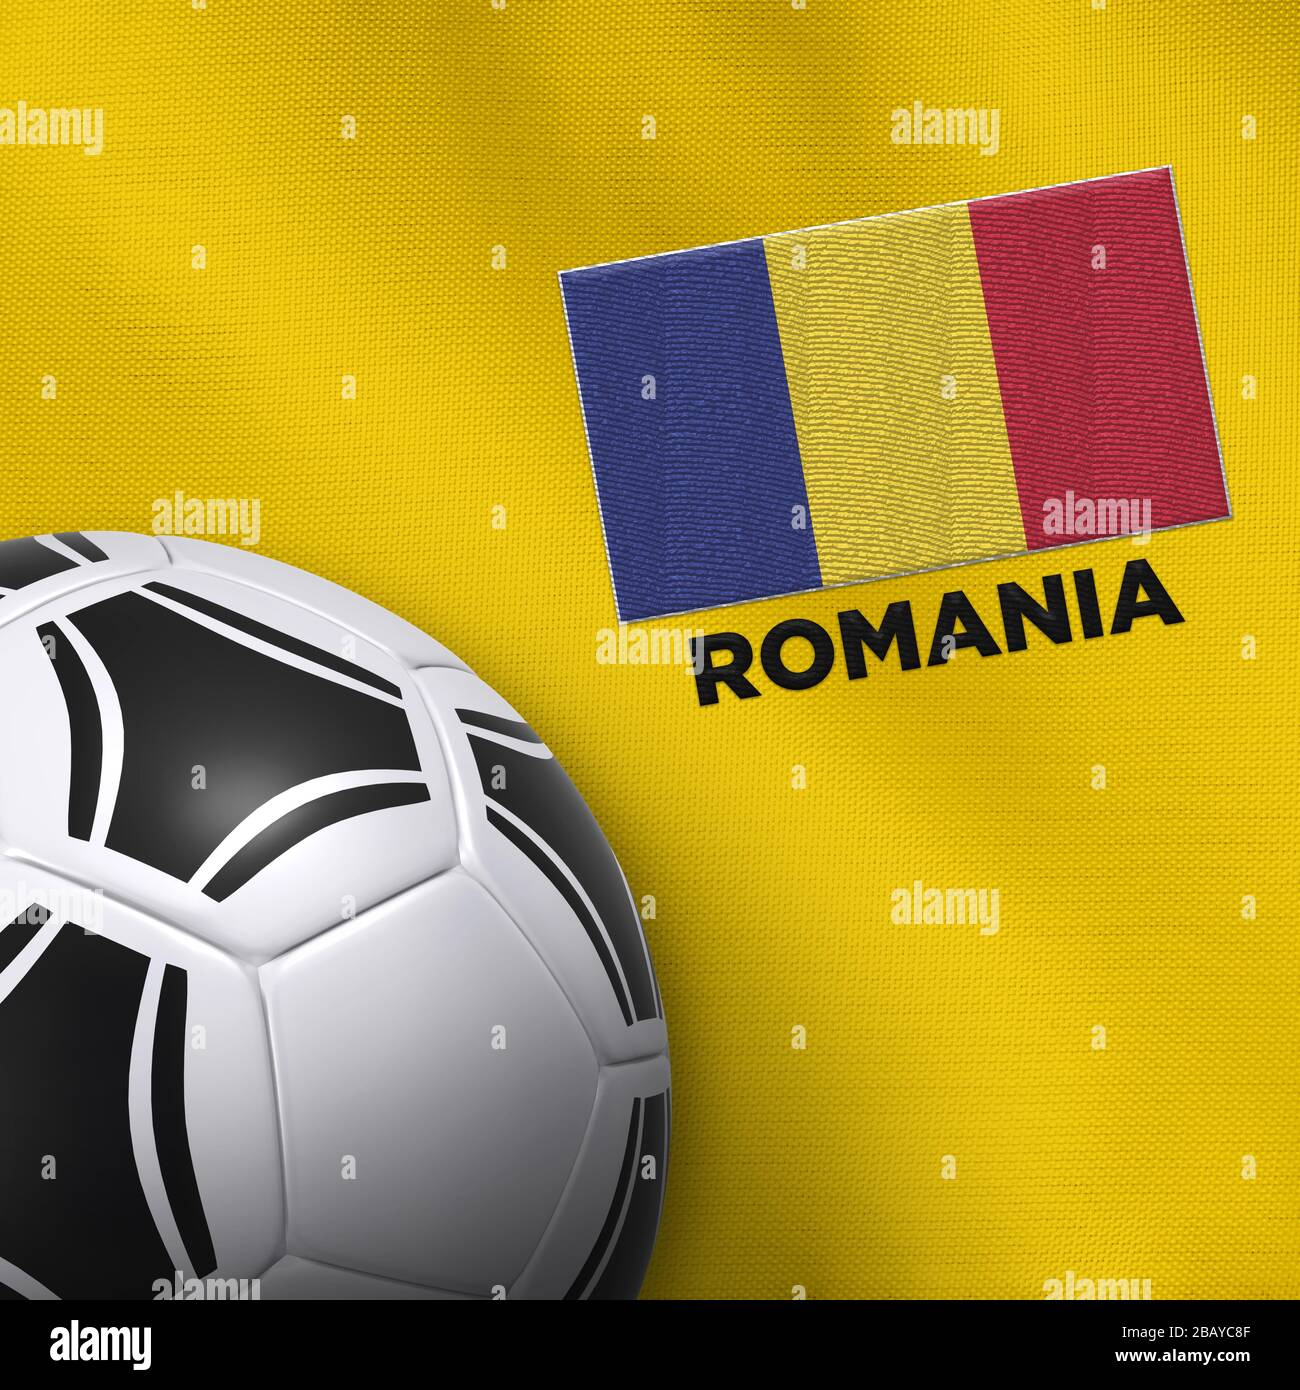 Squadra Nazionale Di Calcio Della Romania Immagini e Fotos Stock - Alamy